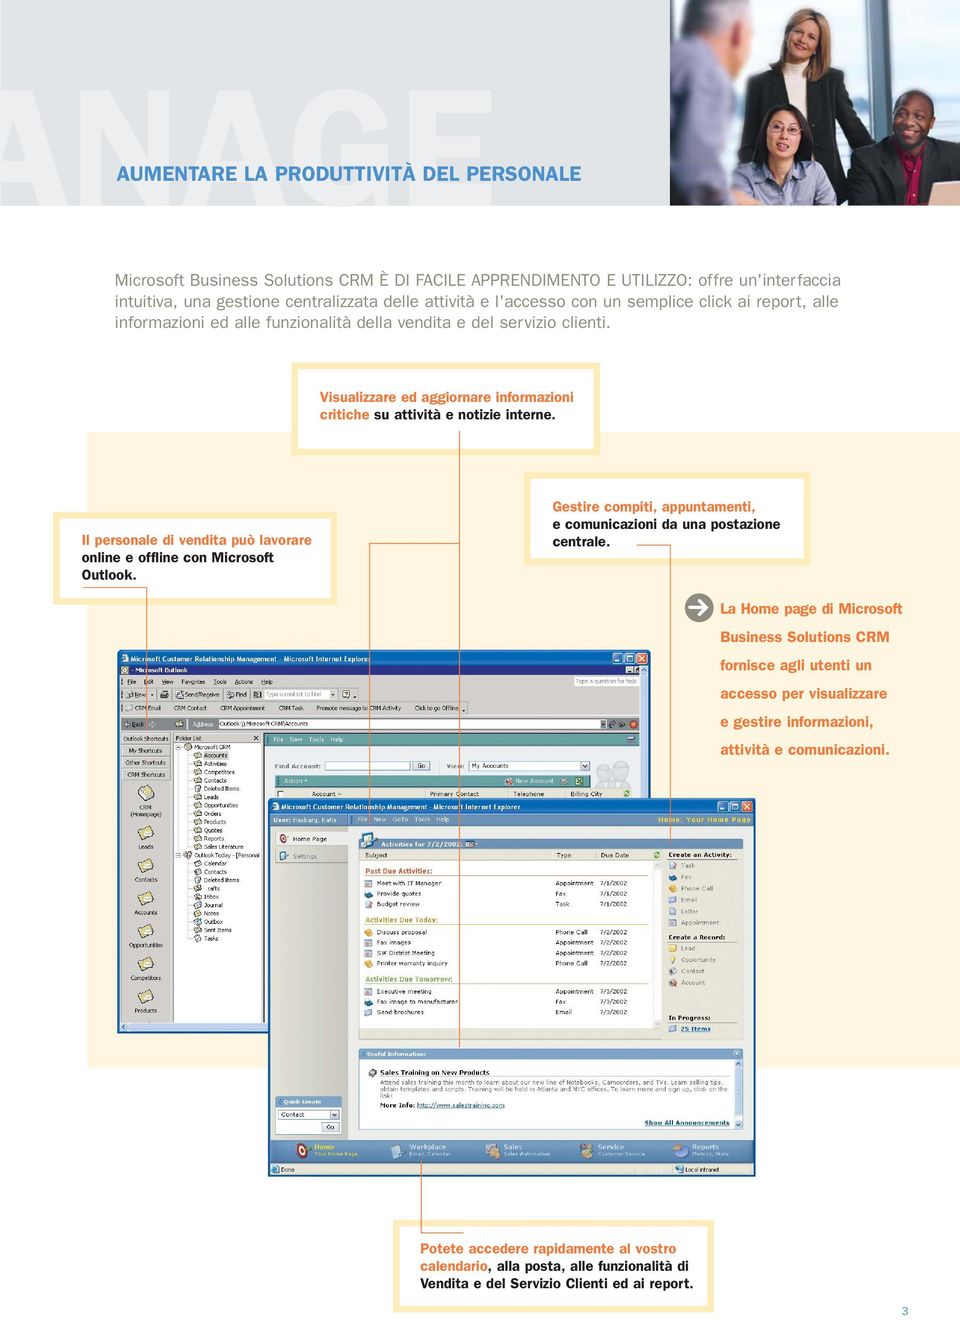 Il personale di vendita può lavorare online e offline con Microsoft Outlook. Gestire compiti, appuntamenti, e comunicazioni da una postazione centrale.